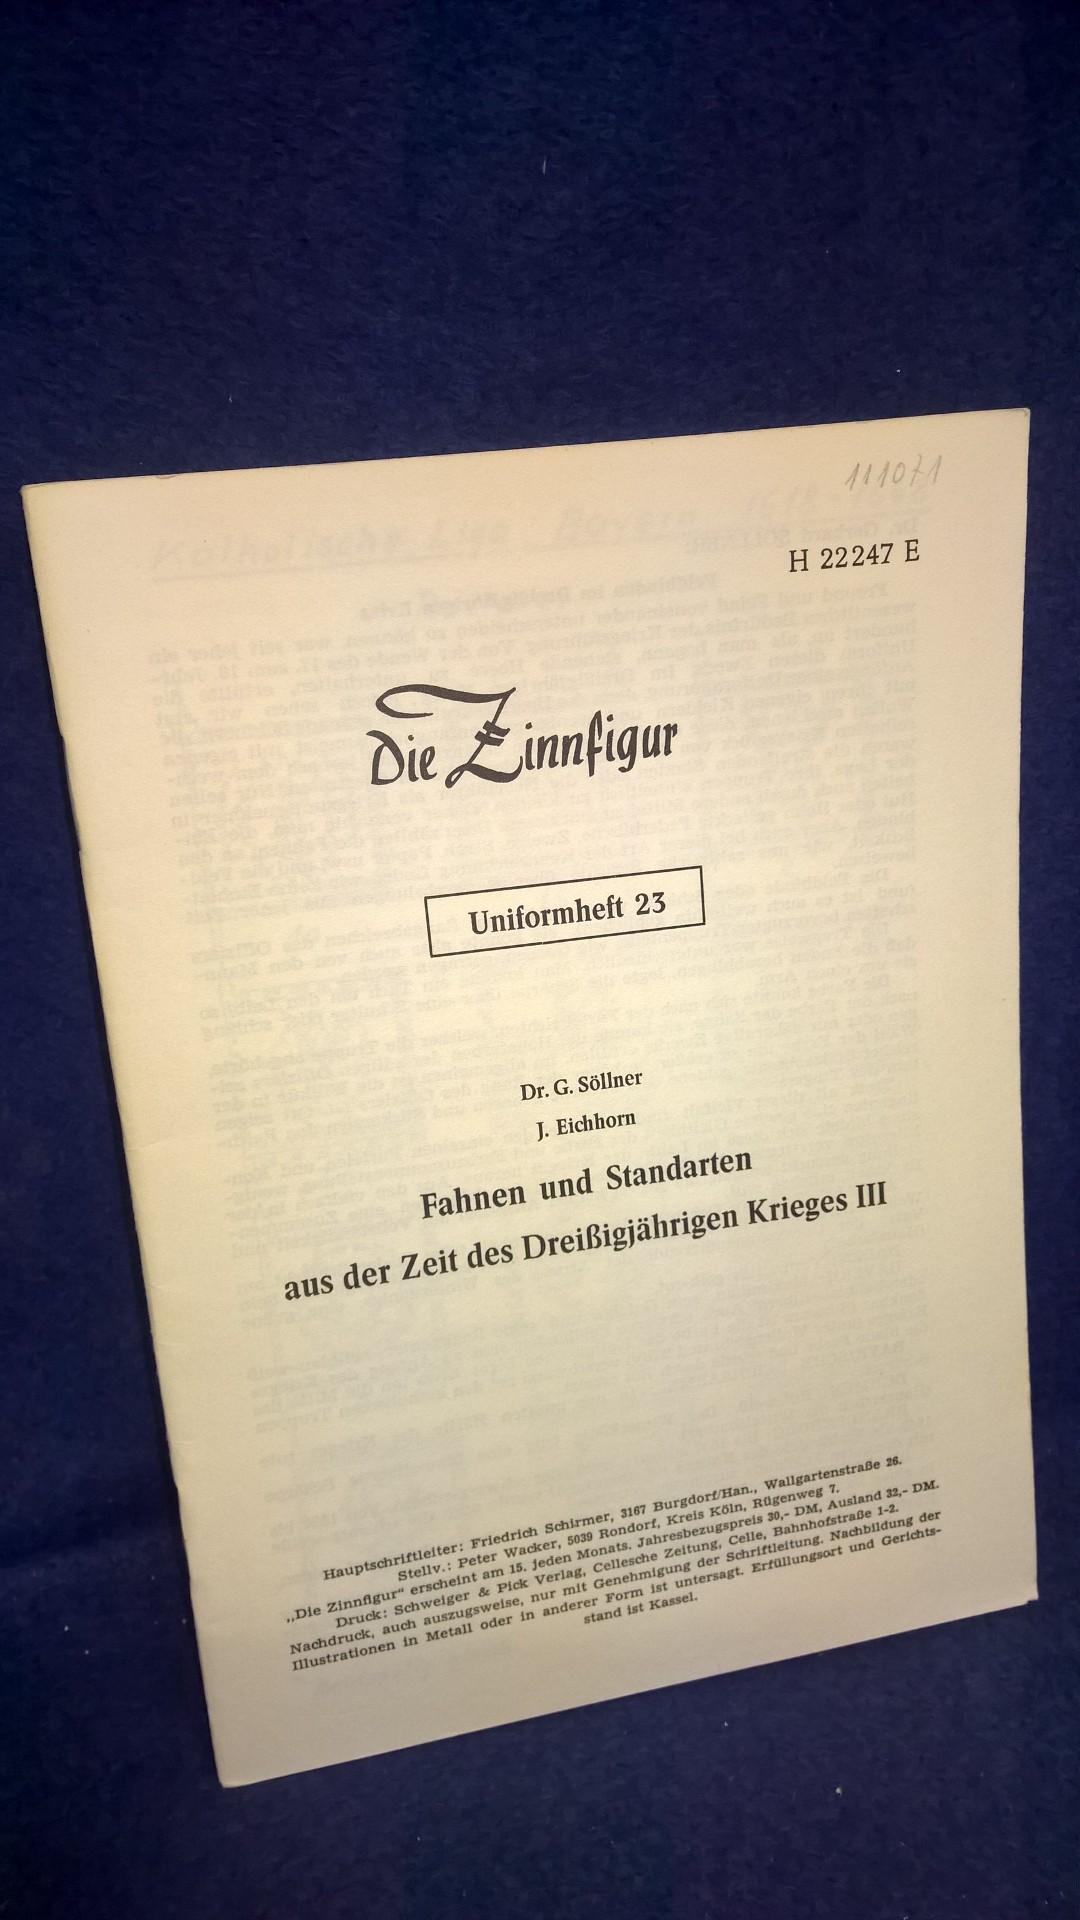 Fahnen und Standarten aus der Zeit des Dreißigjährigen Krieges, III. Teil. Aus der Reihe: Die Zinnfigur -Uniformheft 23 -. Selten.